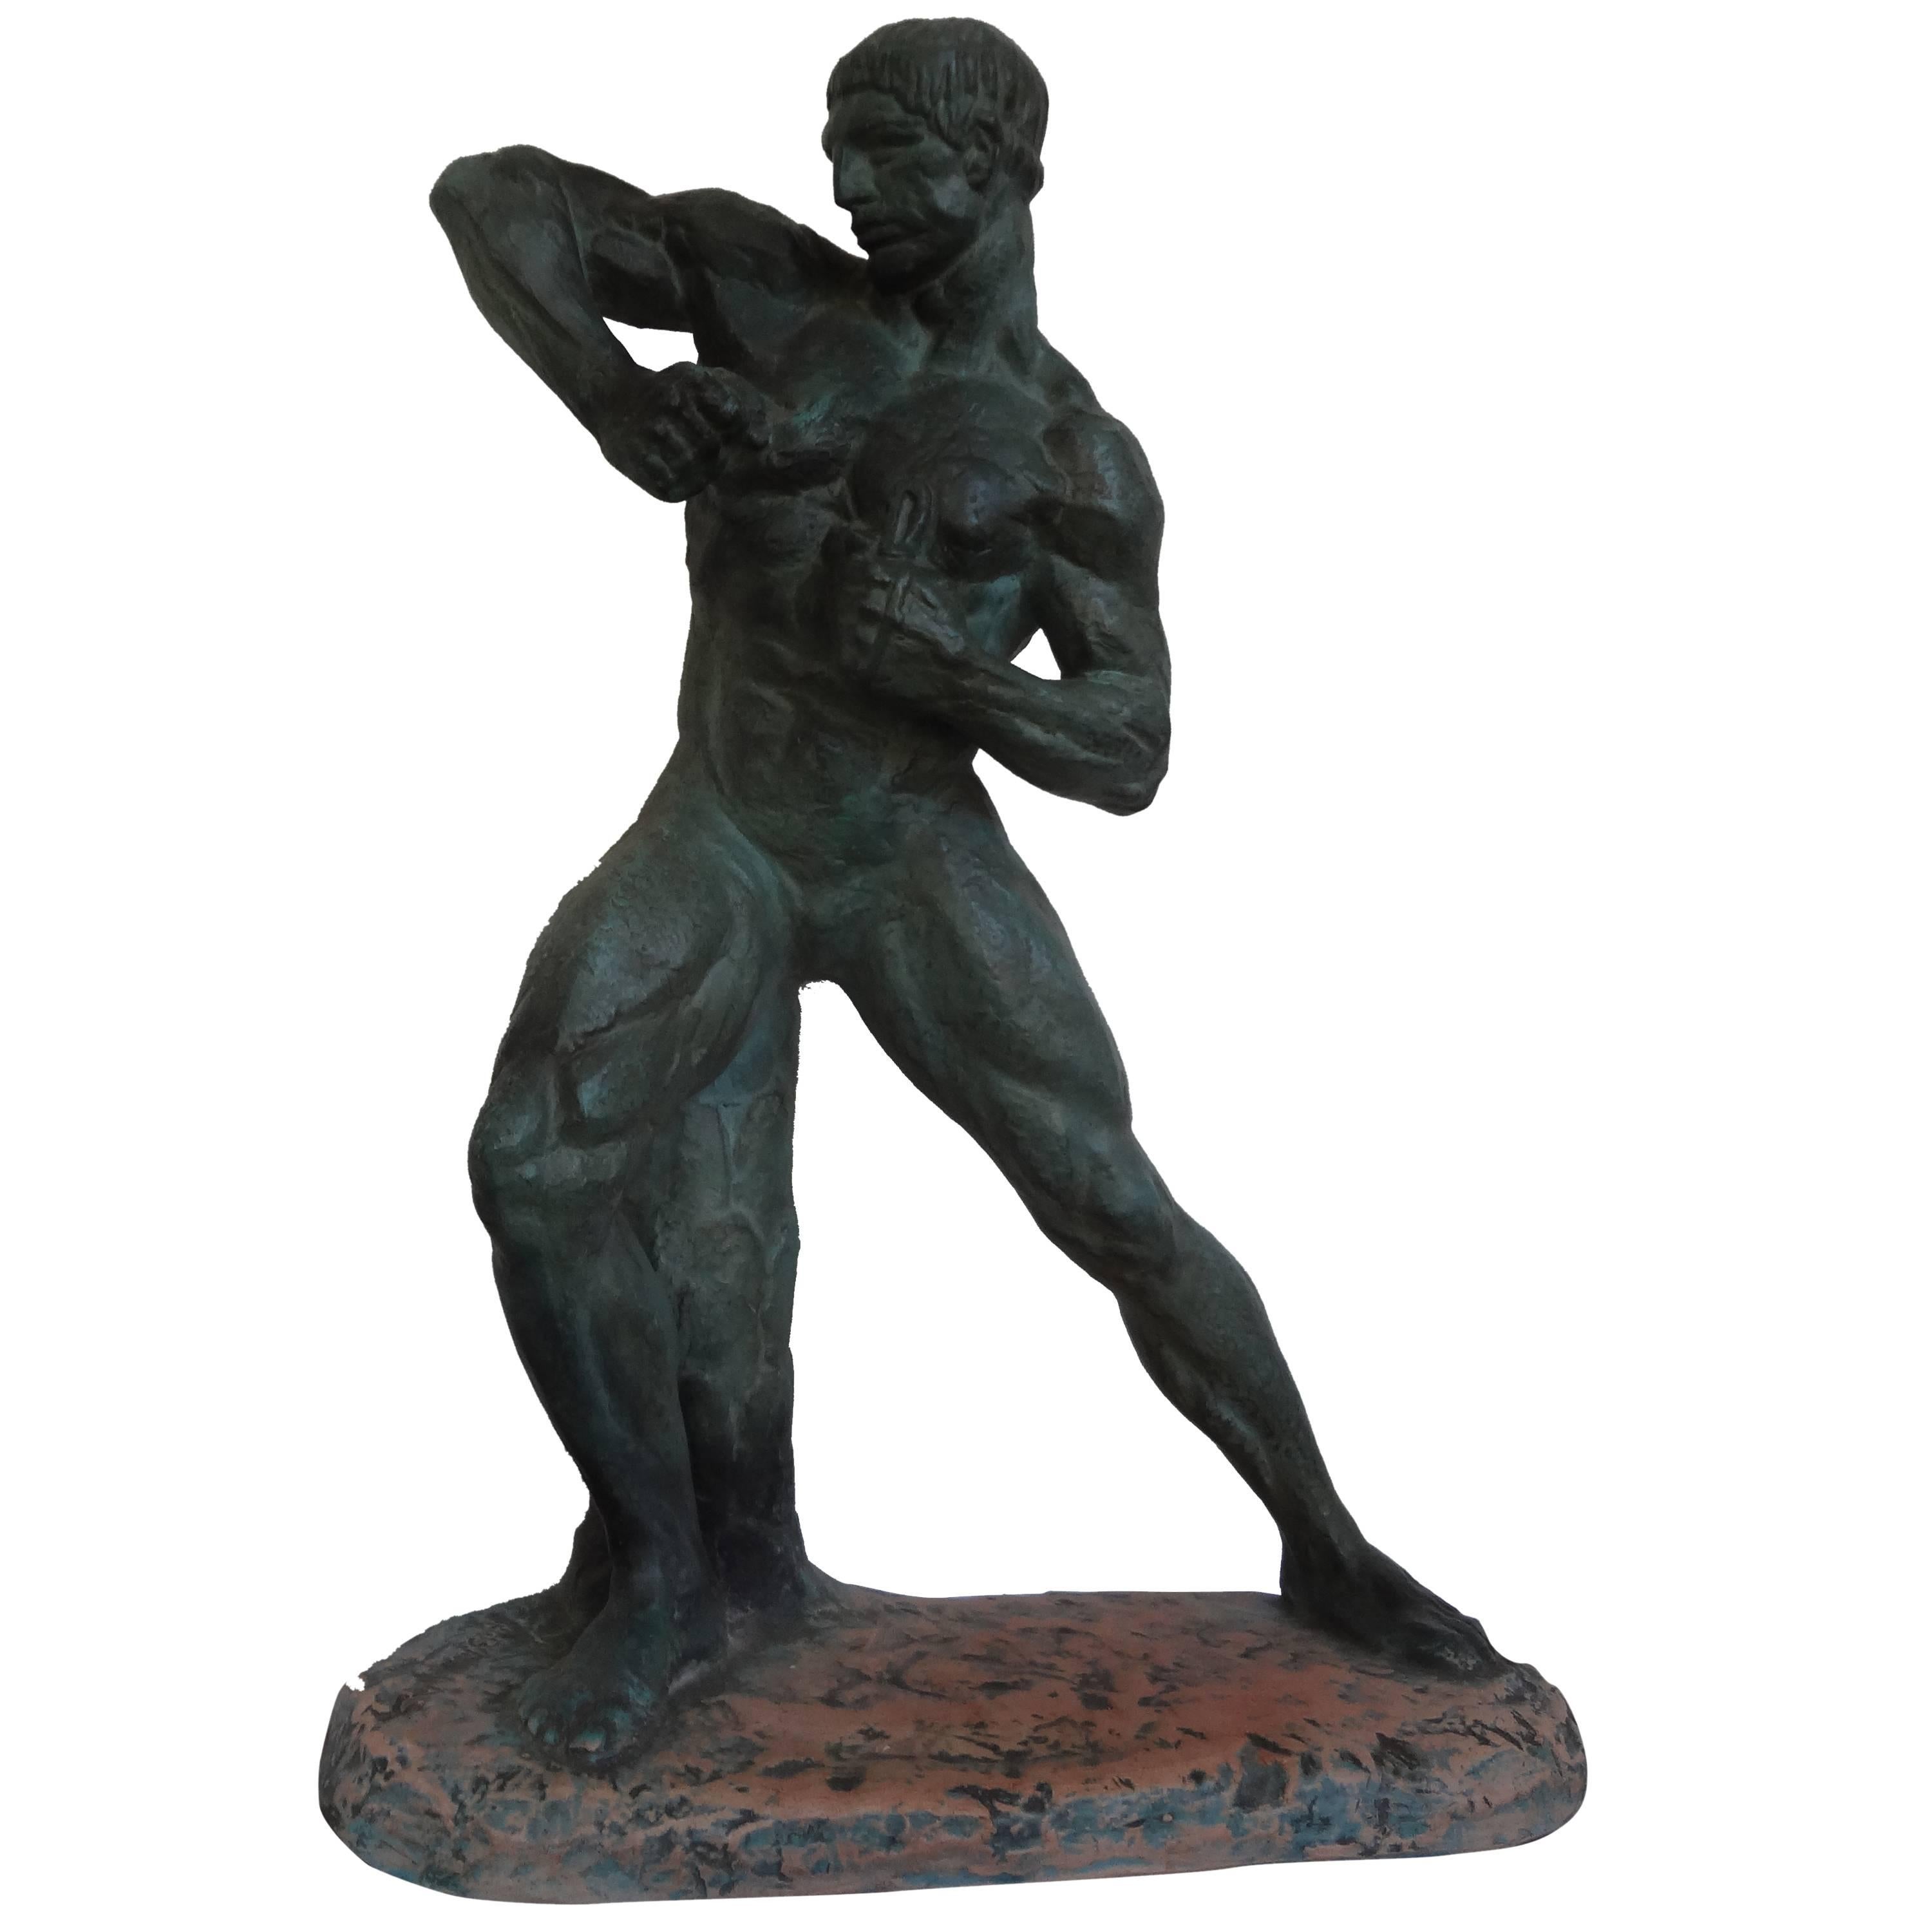 Cette fabuleuse sculpture en terre cuite patinée de l'Art déco français représentant un athlète masculin nu est signée Henri Bargas. Cette sculpture bien exécutée a une finition patinée qui rappelle le bronze et date des années 1930. 

Bargas a